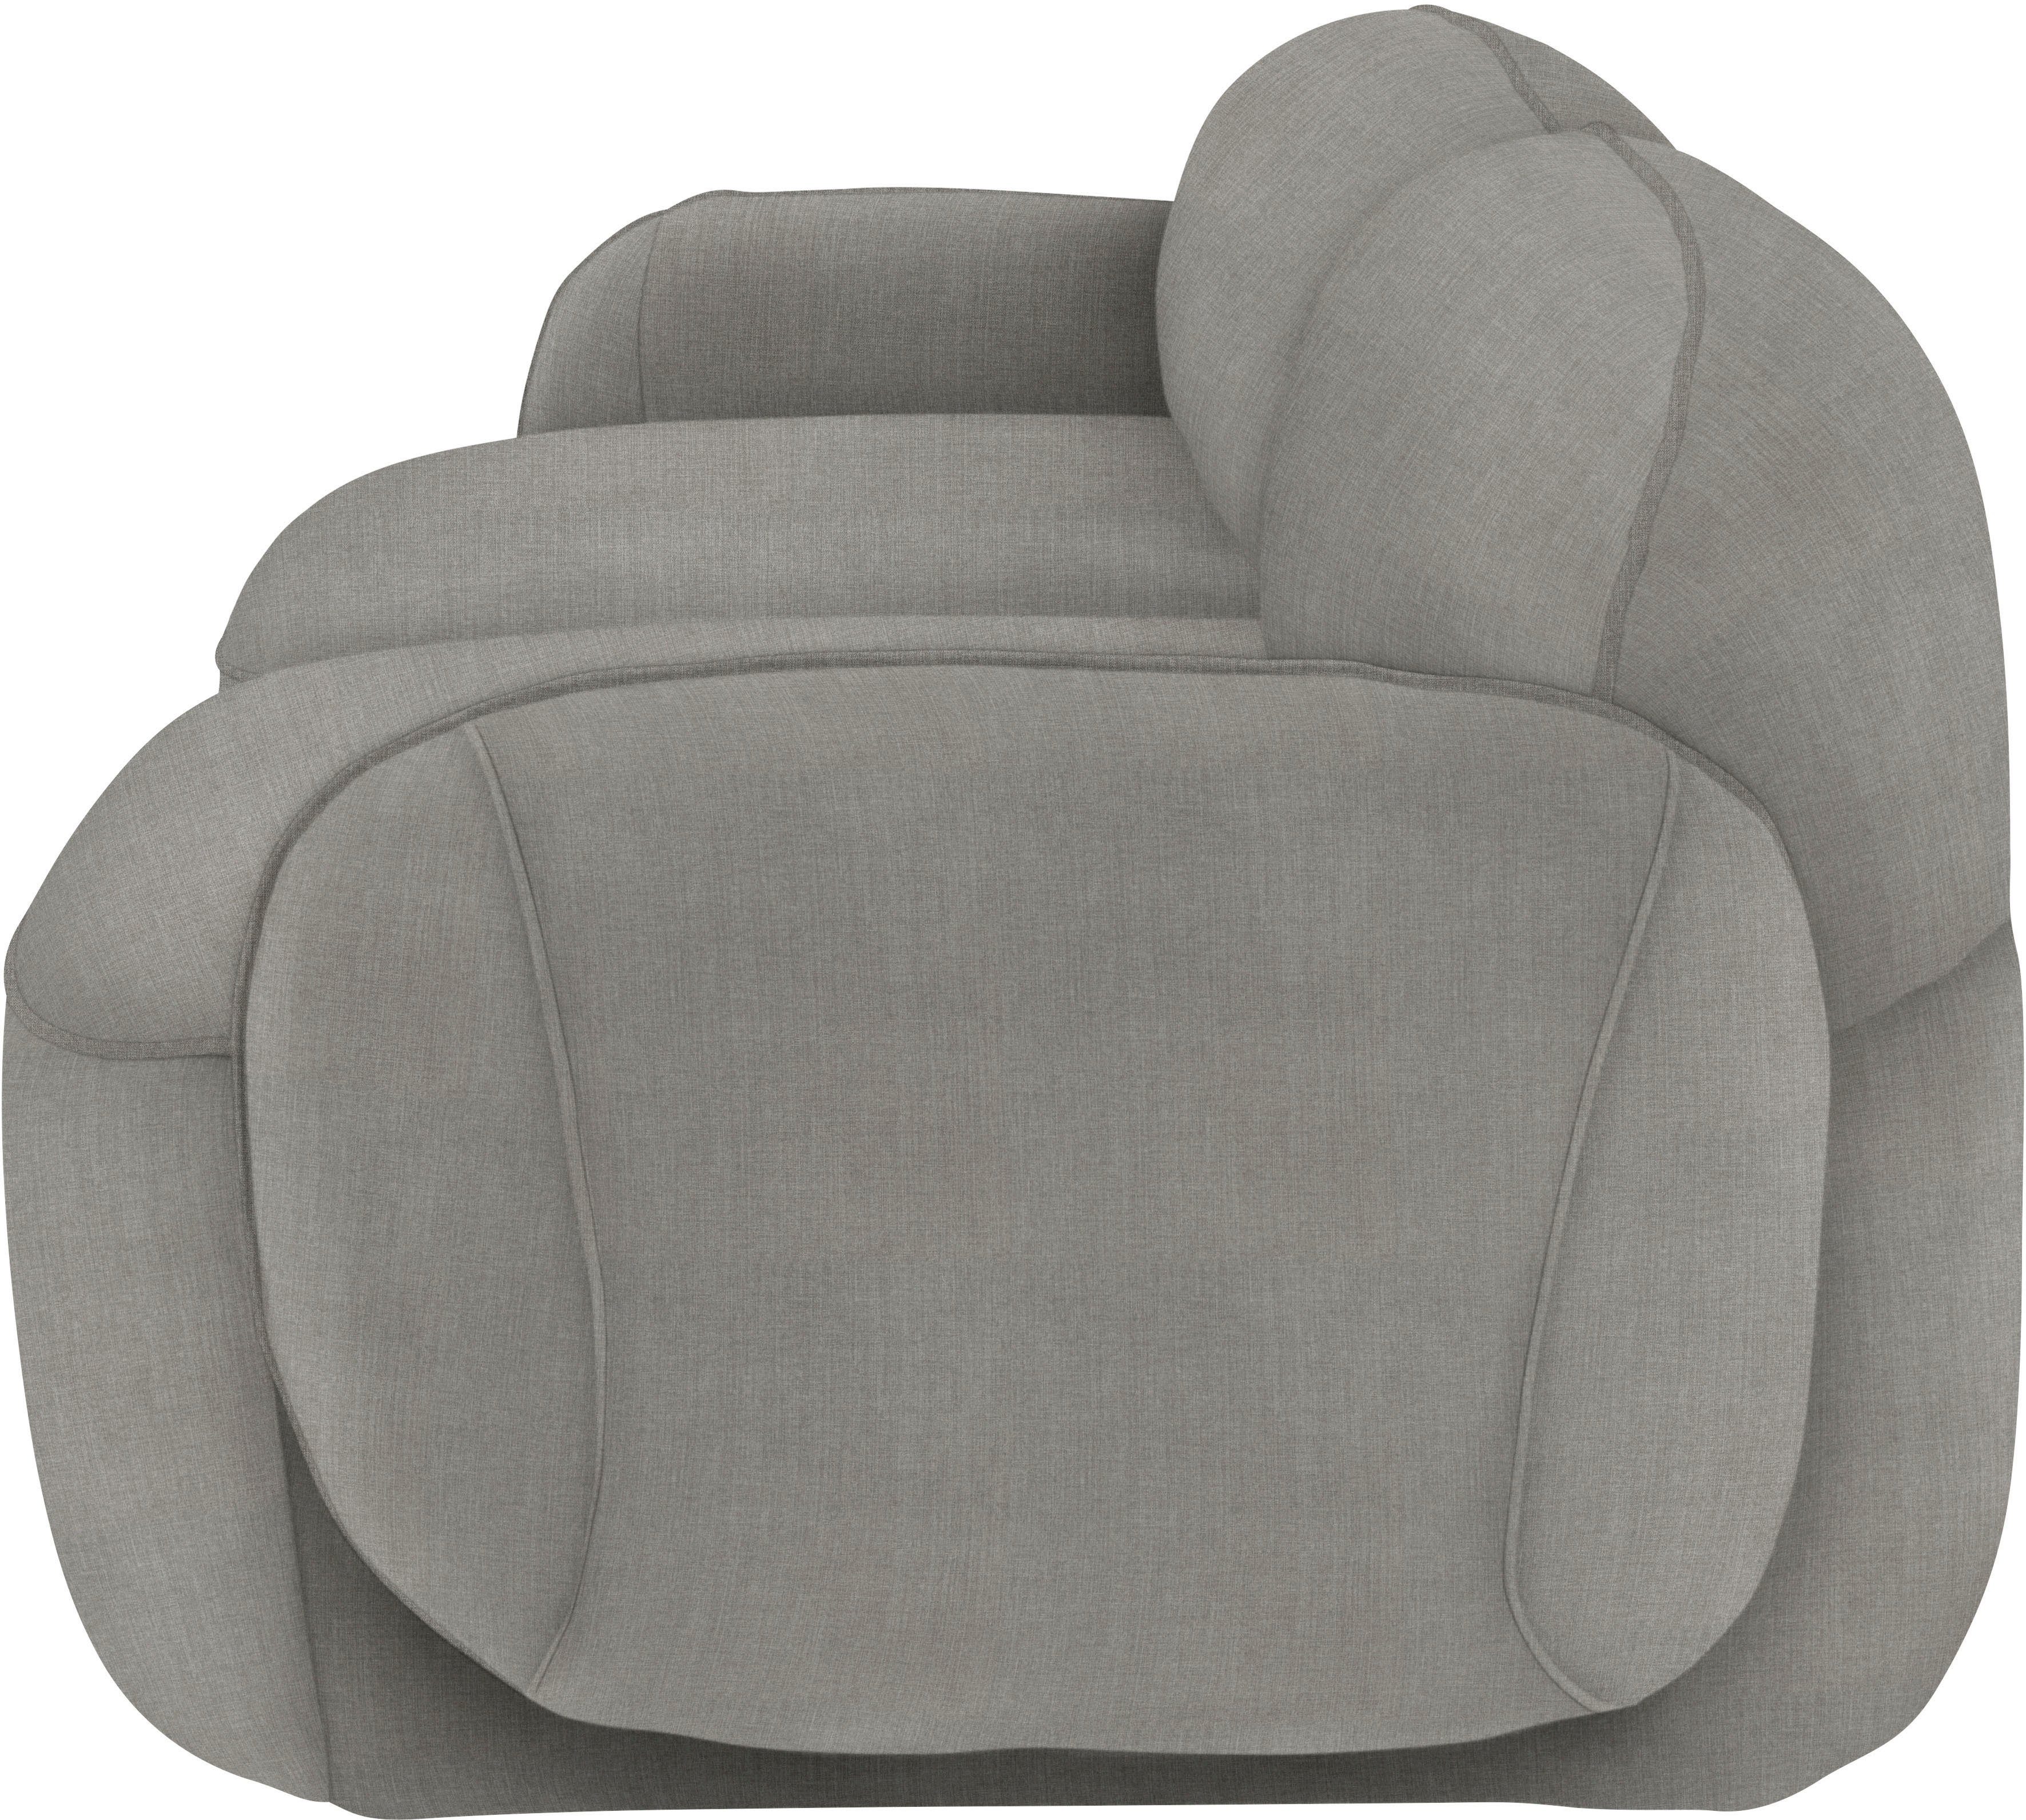 Bubble, furninova skandinavischen 2,5-Sitzer im Memoryschaum, durch Design komfortabel